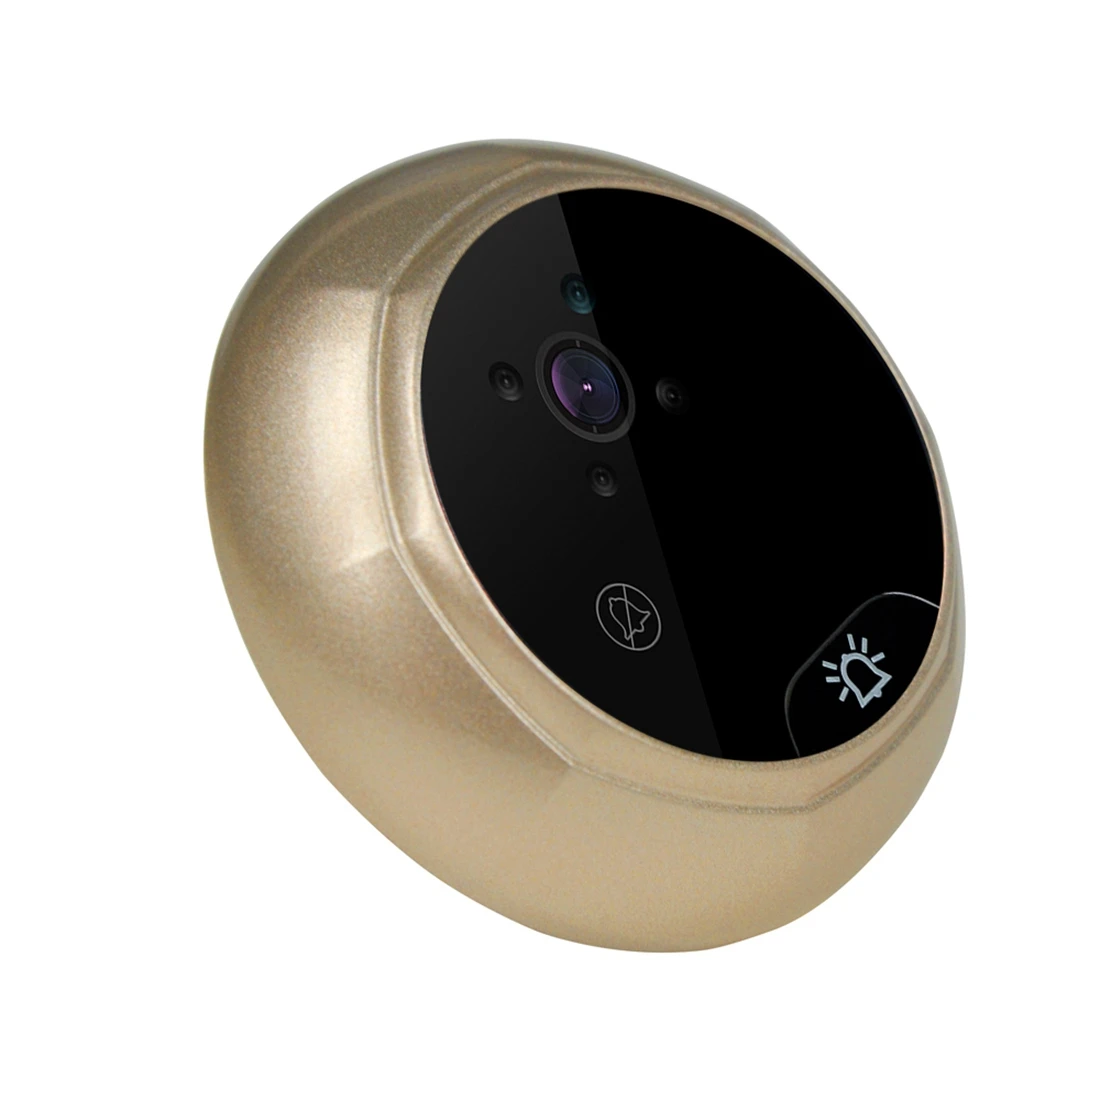 Цветной TFT-дисплей с диагональю 2,4 дюйма, камера для просмотра в дверной глазок, видеокамера для дверного звонка PIR ночного видения с широким углом обзора 160 °